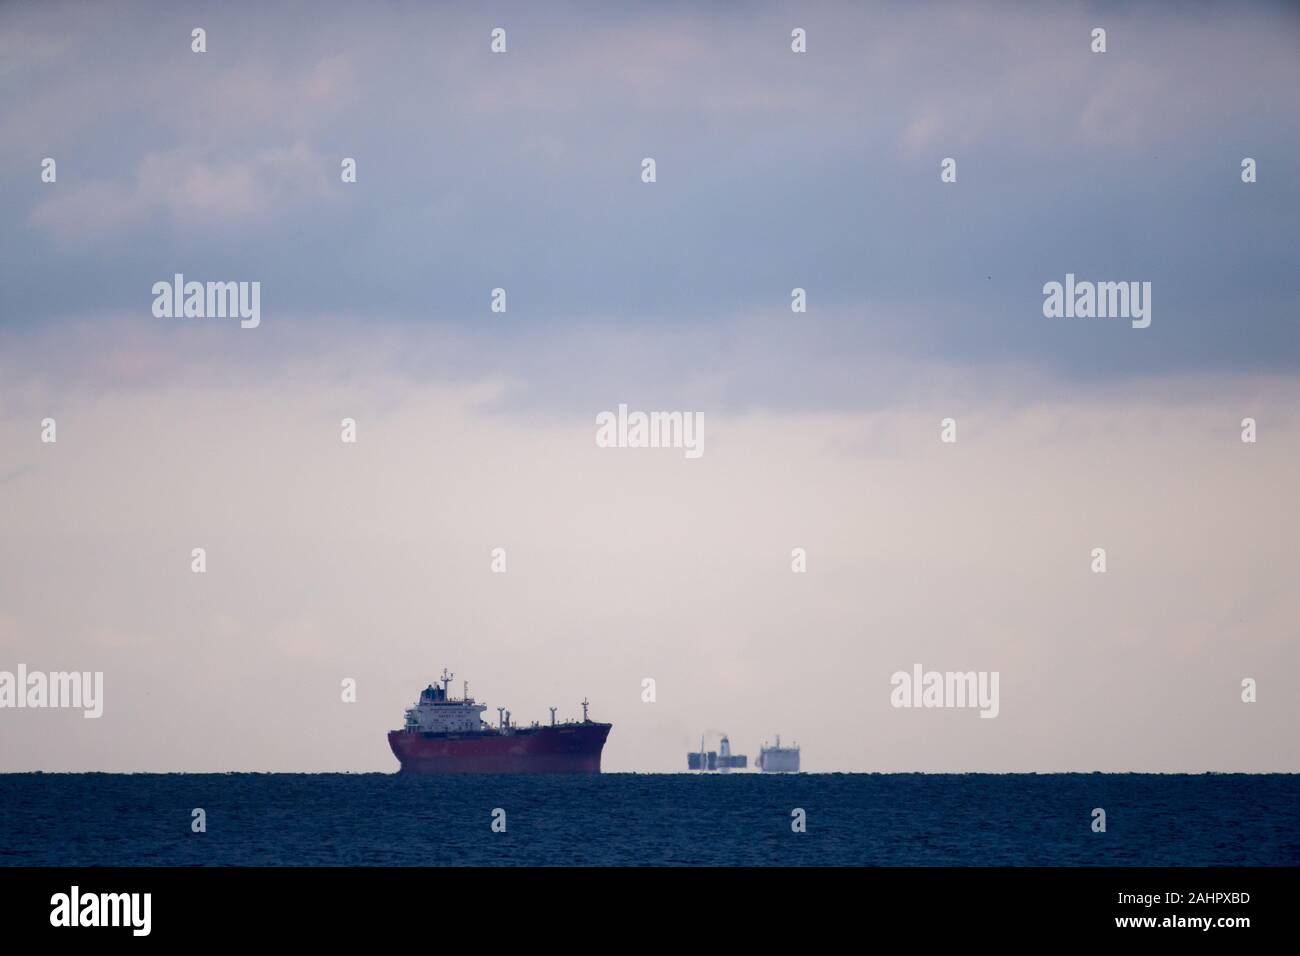 Ship in Gdynia, Poland. December 15th 2019 © Wojciech Strozyk / Alamy Stock Photo Stock Photo